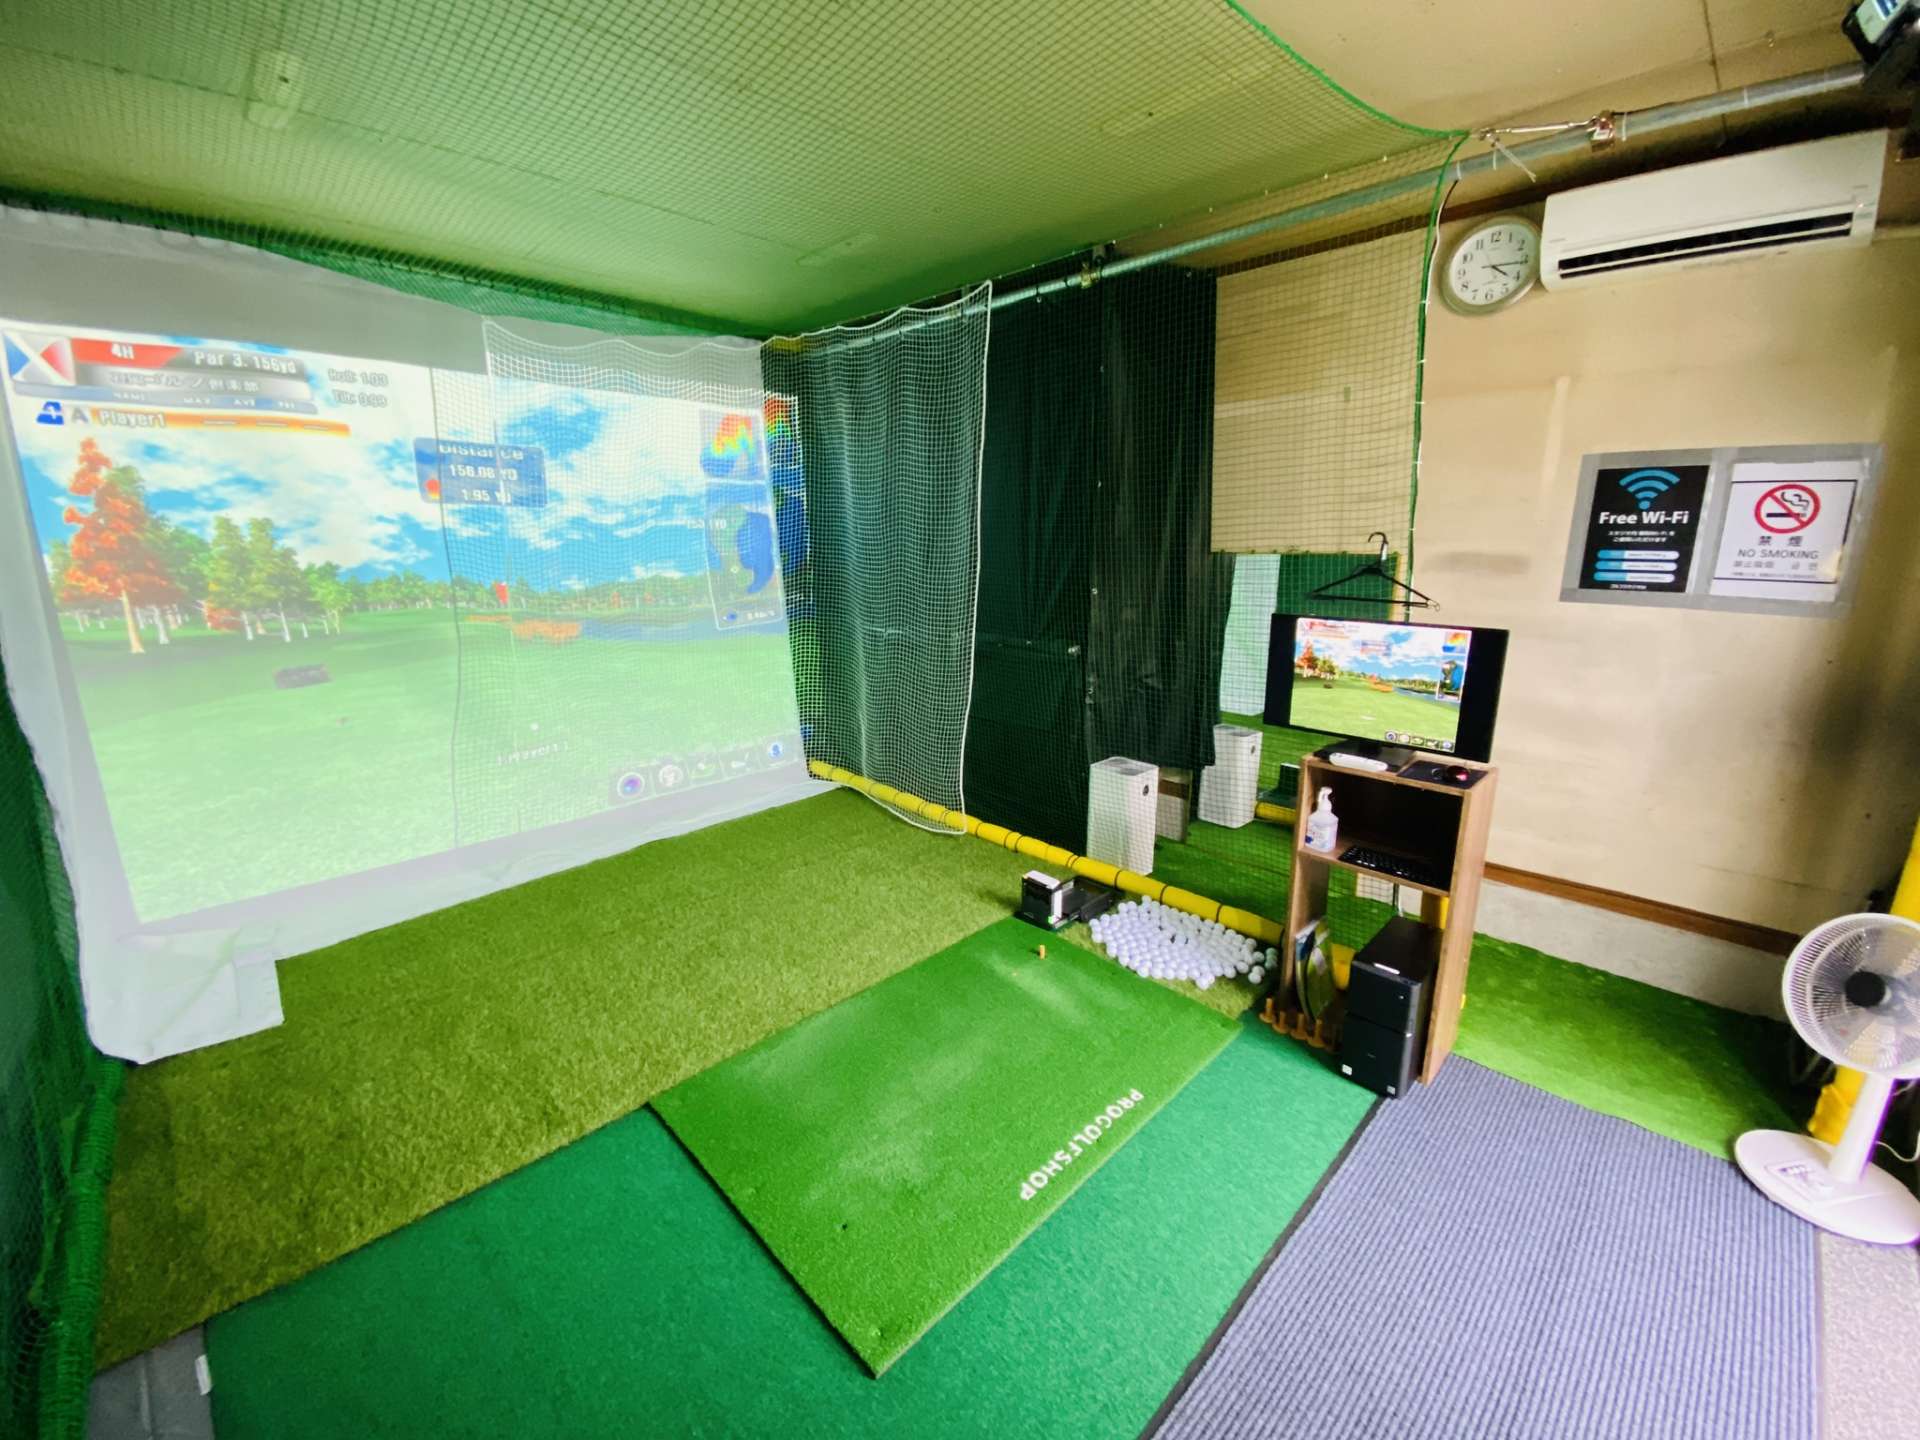 葛飾区で一番安いシミュレーションゴルフのお店と言えばゴルフスタジオM